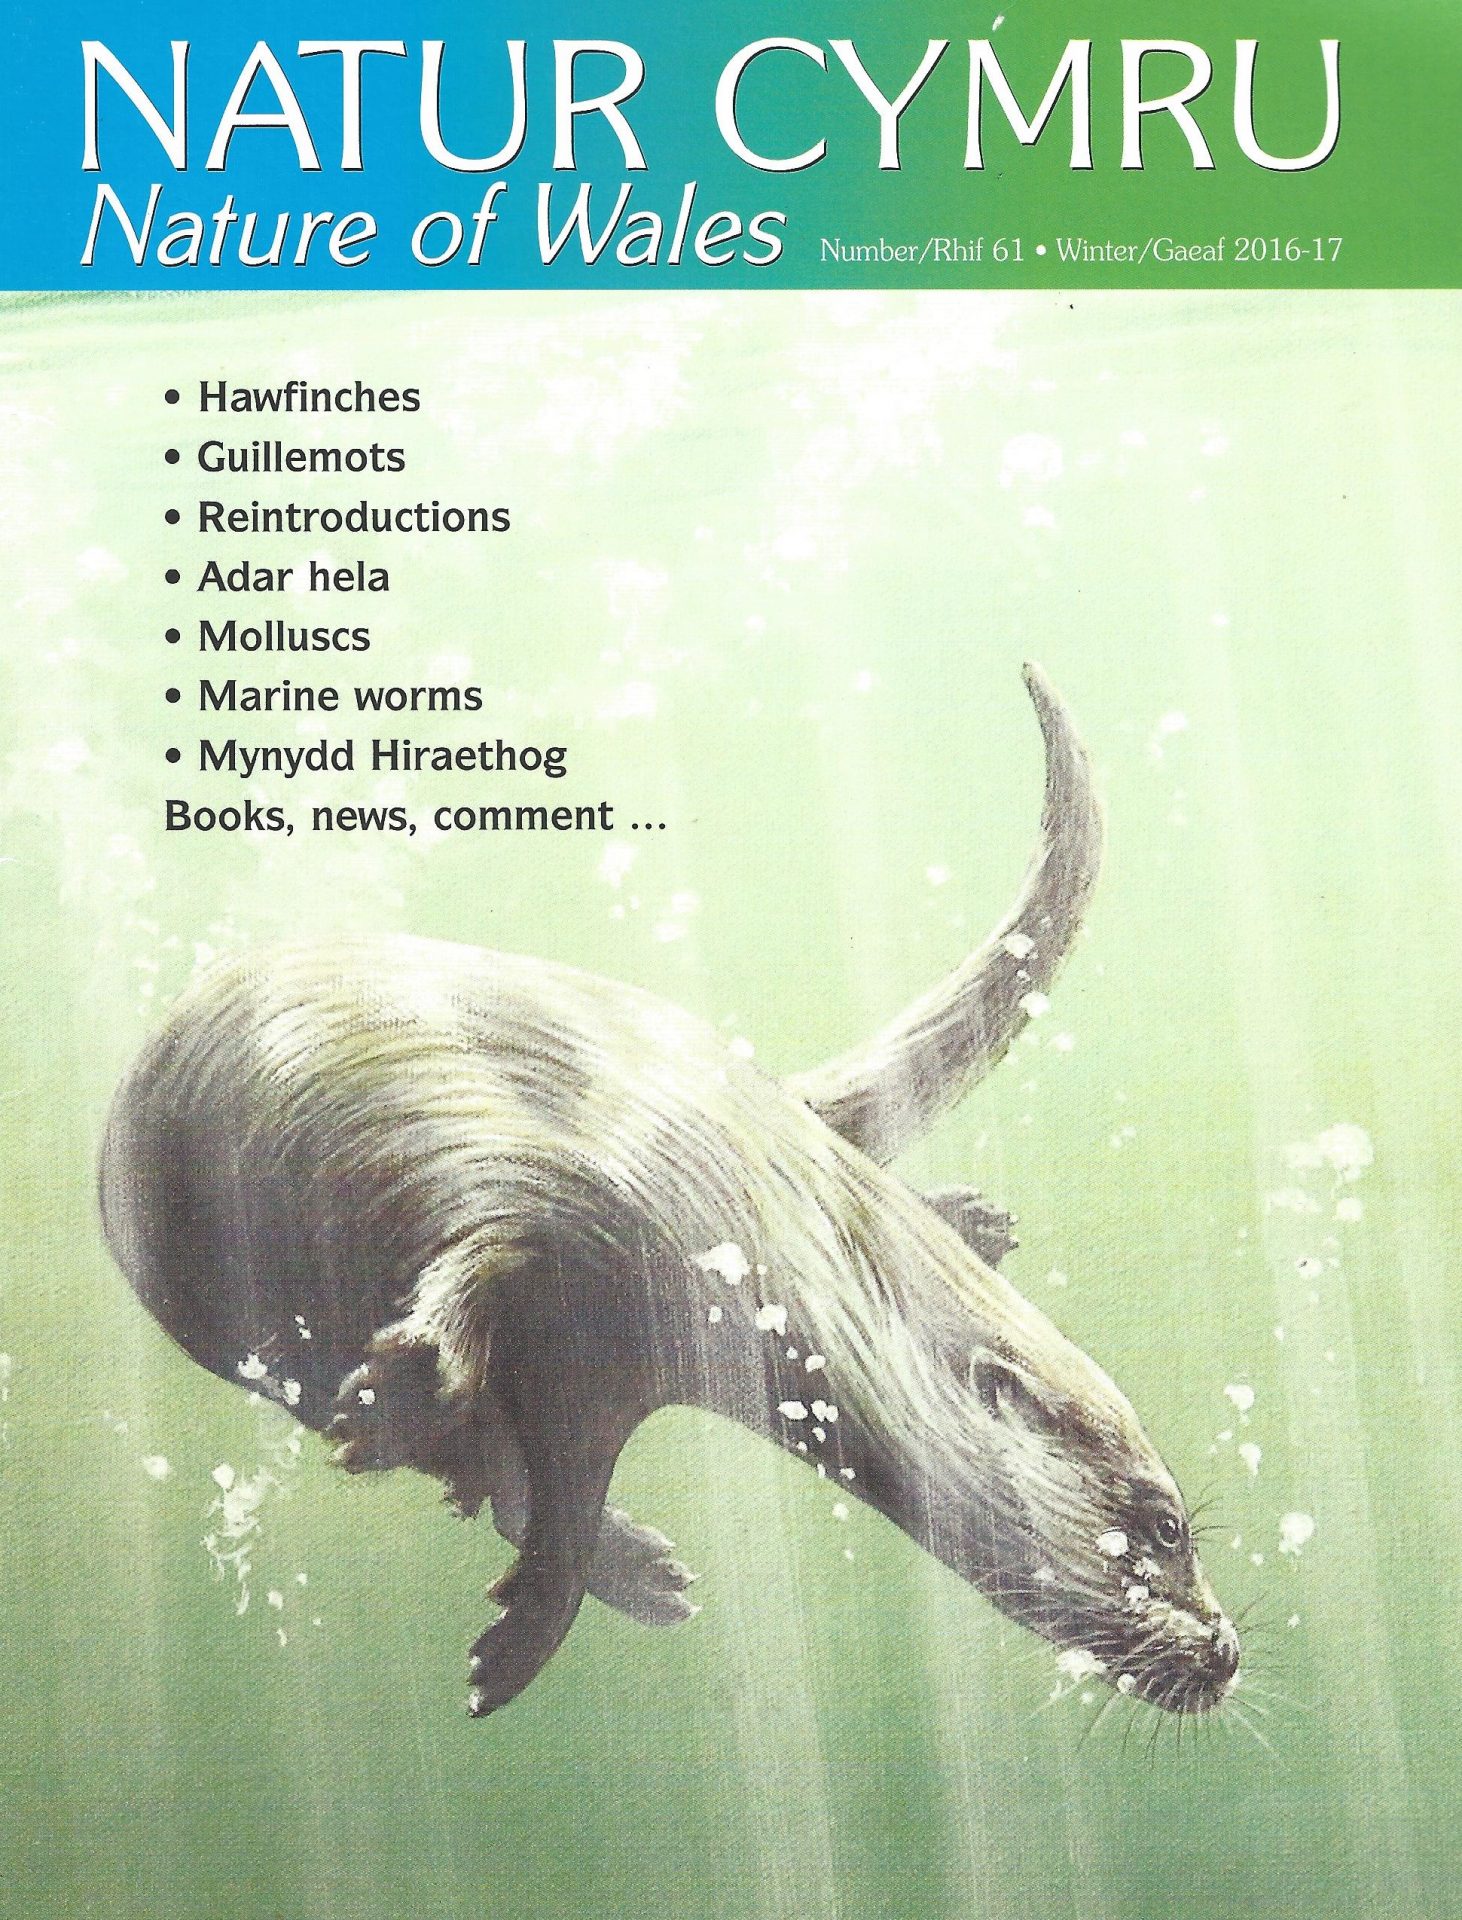 Natur Cymru cover issue 61